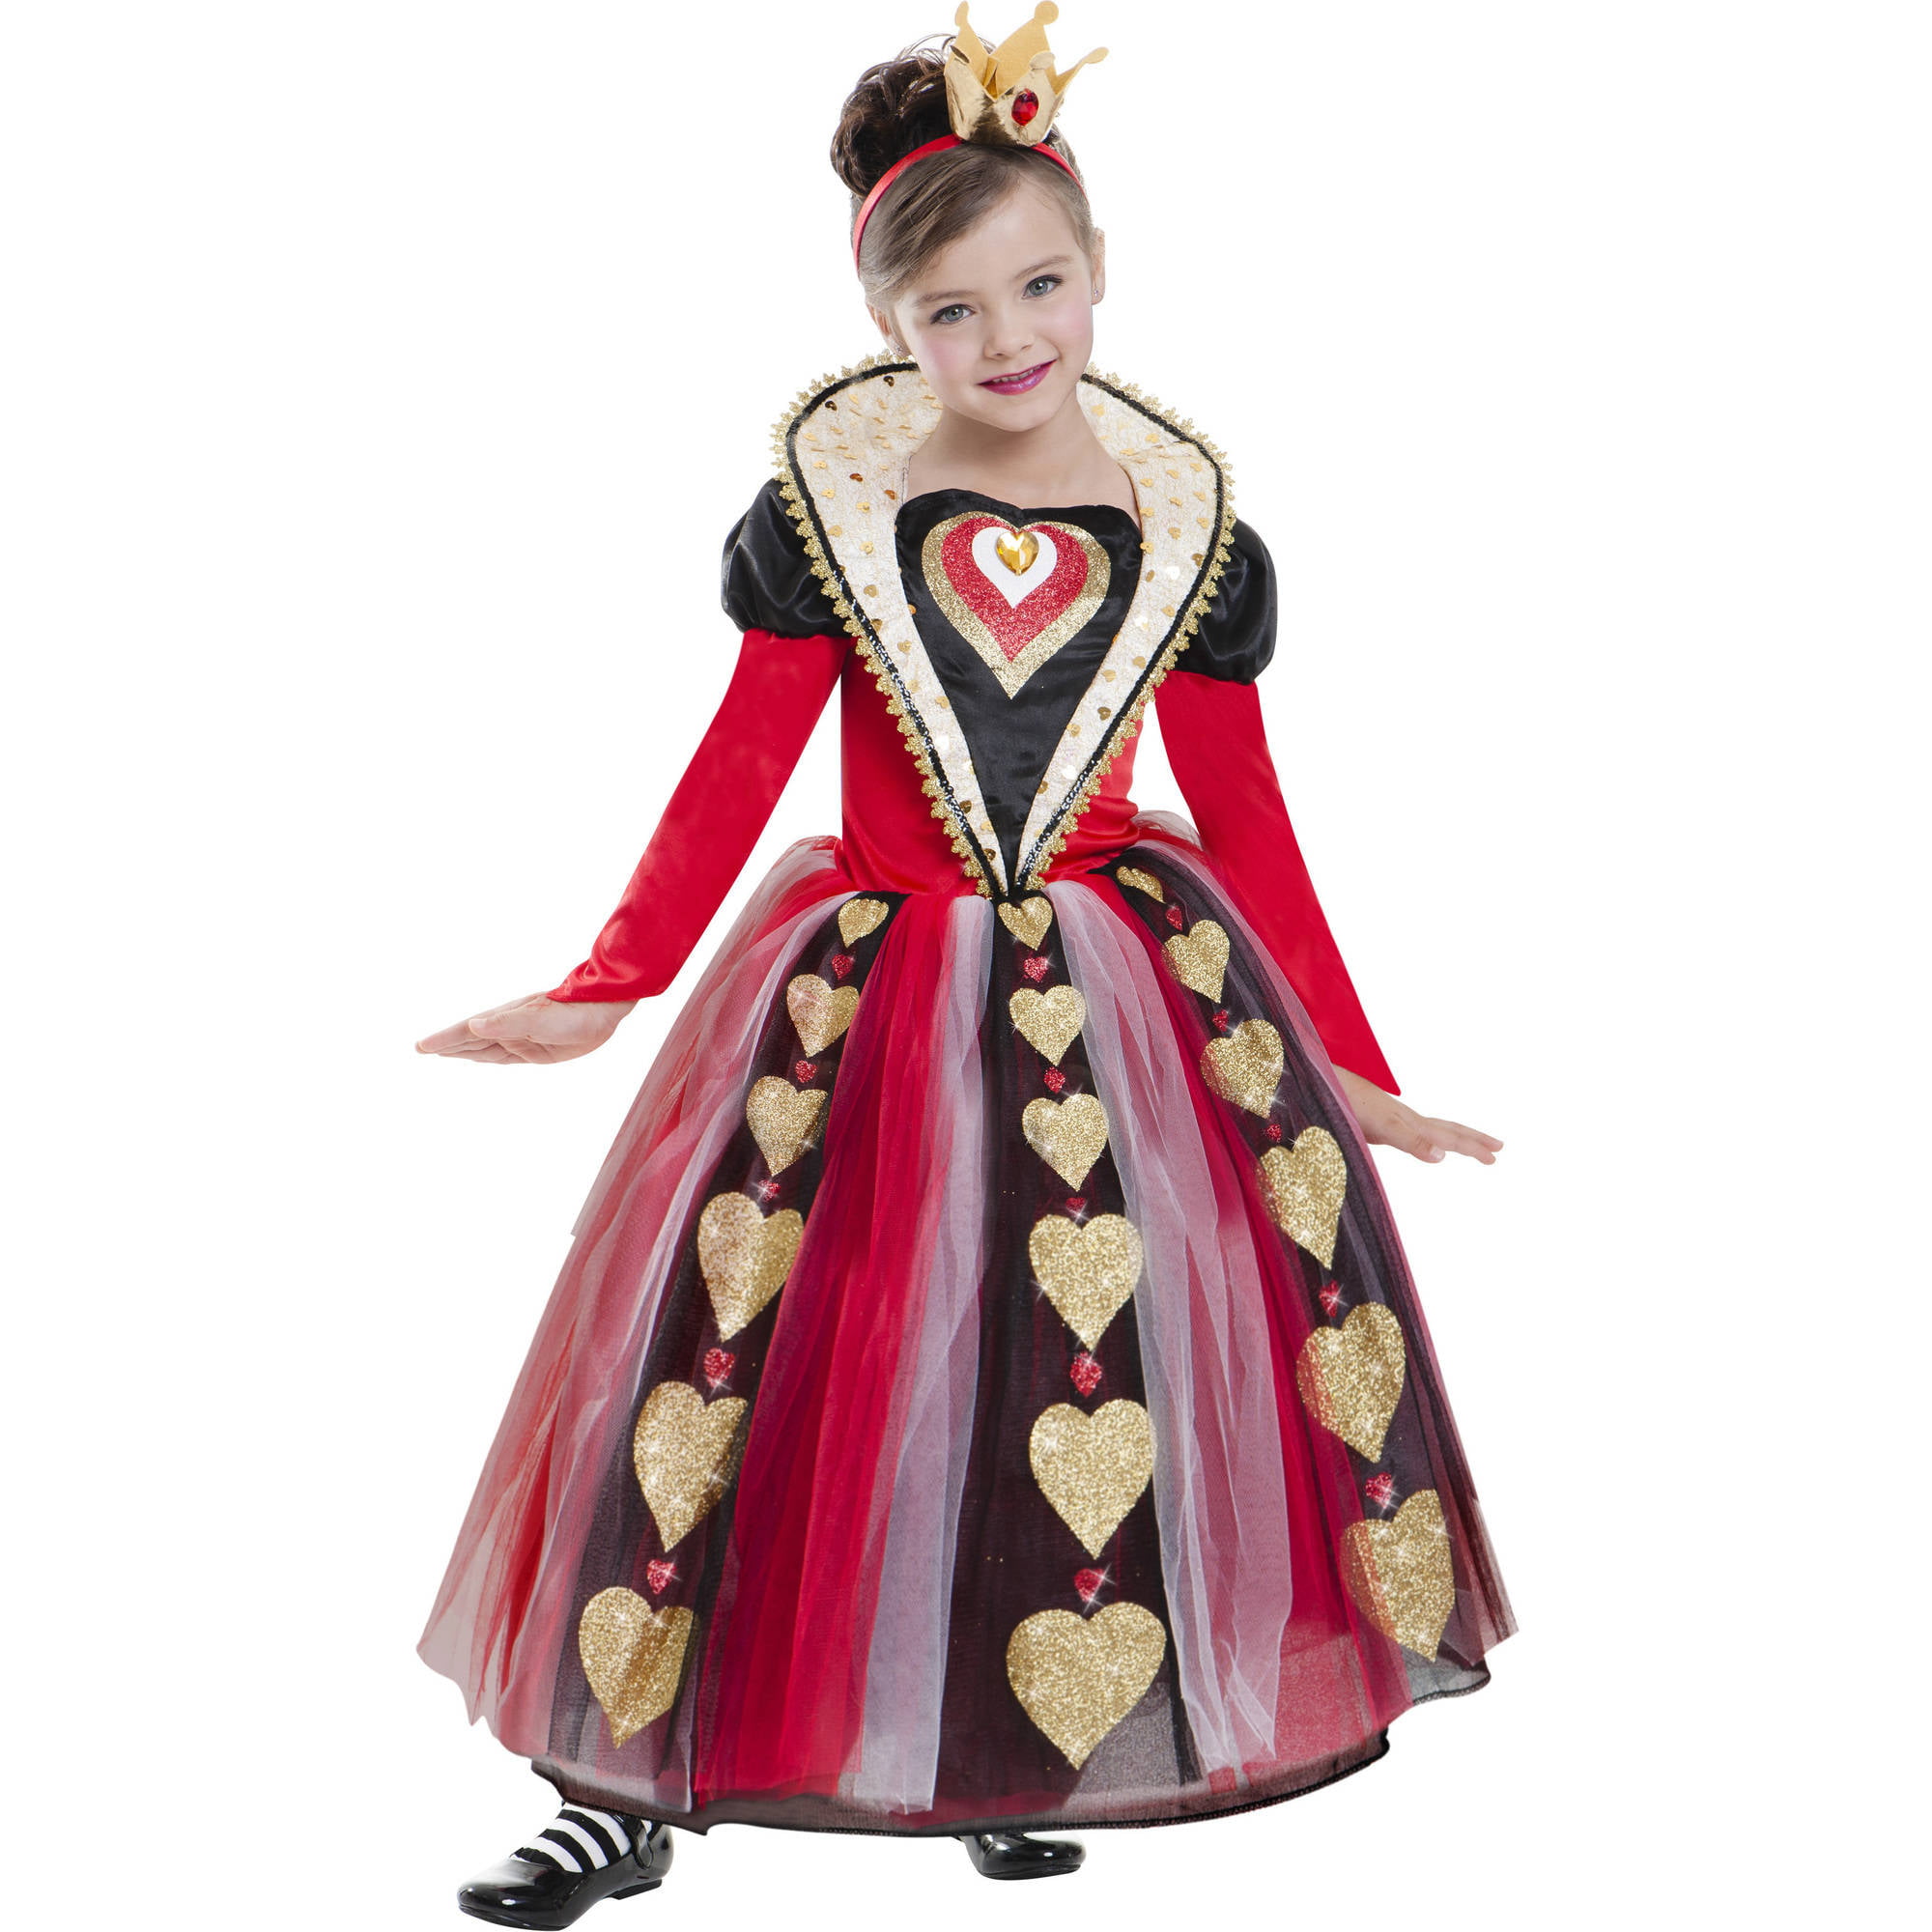 Queen Of Hearts Child Halloween Costume - Walmart.com - Walmart.com